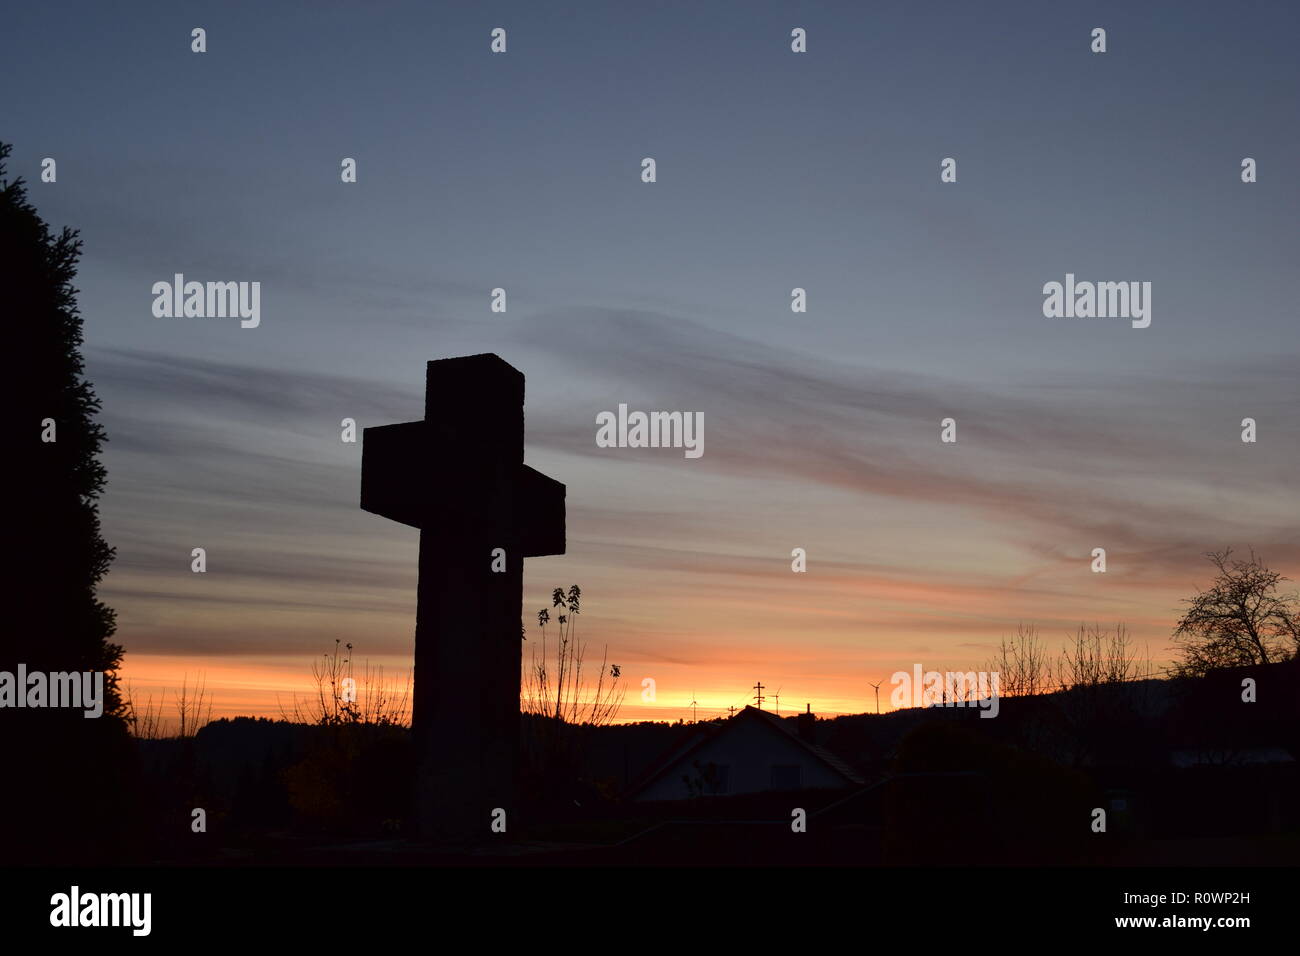 Chronologie de la soirée ciel crépuscule vu de derrière une croix en pierre de sable sculpture au cours de la coucher du soleil soleil dans le cimetière civil Reimsbach, Centre, Banque D'Images